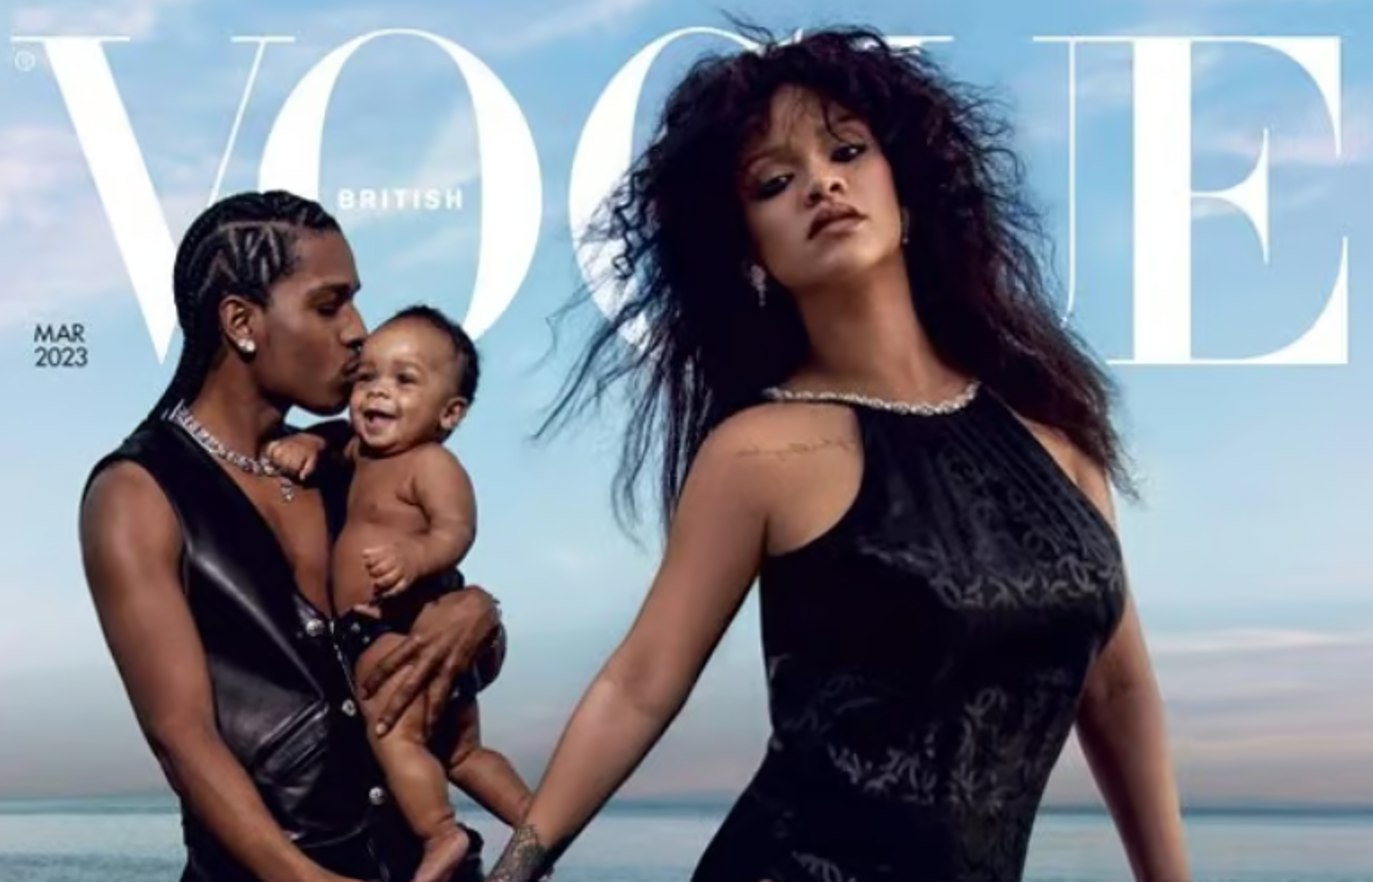 Hamilə Rihanna oğlu və əri ilə “Vogue”də BƏRQ VURDU – FOTOSESSİYA